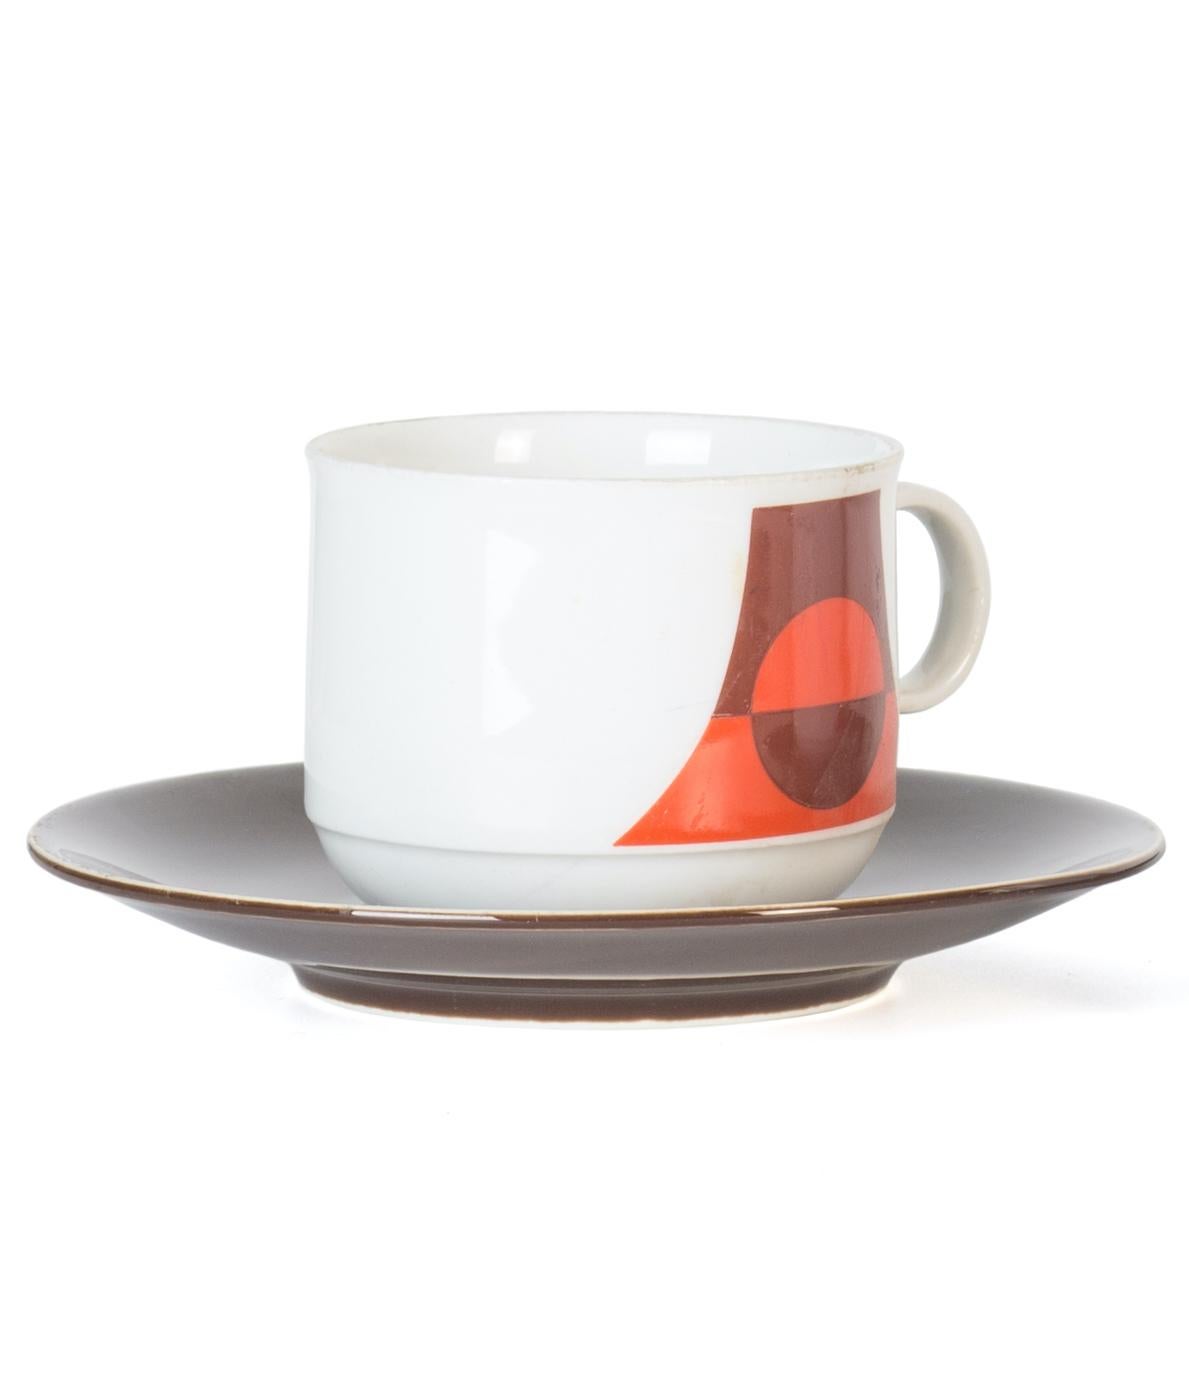 Le service à café Seltmann Weiden est un élégant ensemble décoratif en porcelaine, réalisé au cours du siècle dernier par Seltmann Weiden Bavière

Il s'agit d'un service à café très élégant décoré de motifs géométriques orange et marron.

Le